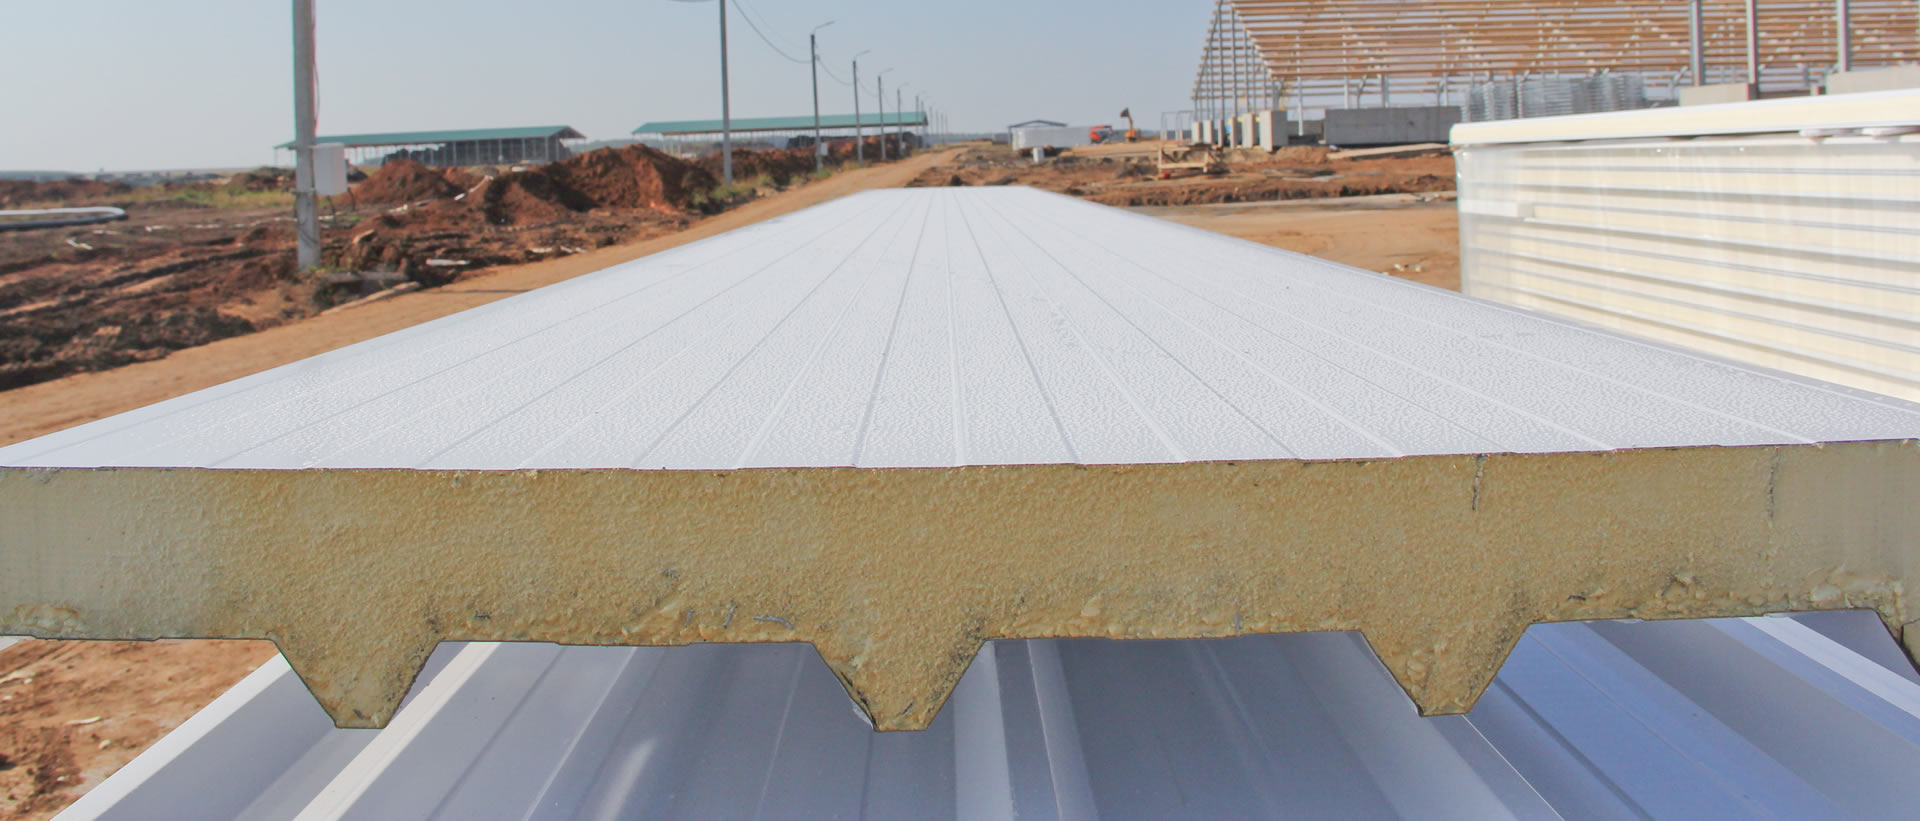 Trapezblech Isoliert kaufen für Dach-oder Wandverkleidung mit Wärmedämmung